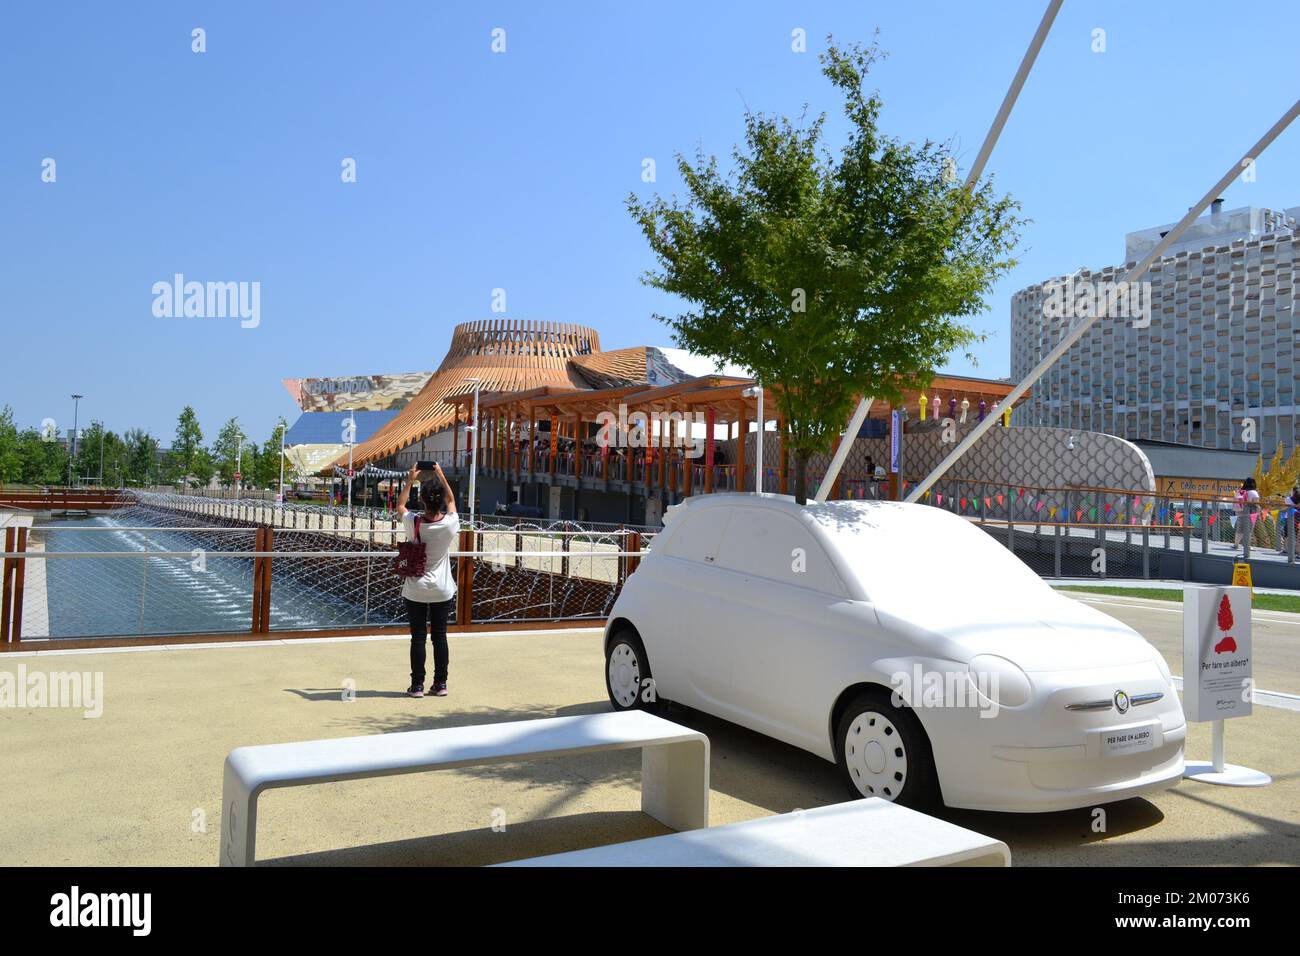 FIAT-Baum-Auto. Nahaufnahme des Modells des berühmten Fiat 500, das an einem sonnigen Tag auf der EXPO Milano 2015 einen 12 Meter hohen Birnenbaum beherbergt. Stockfoto